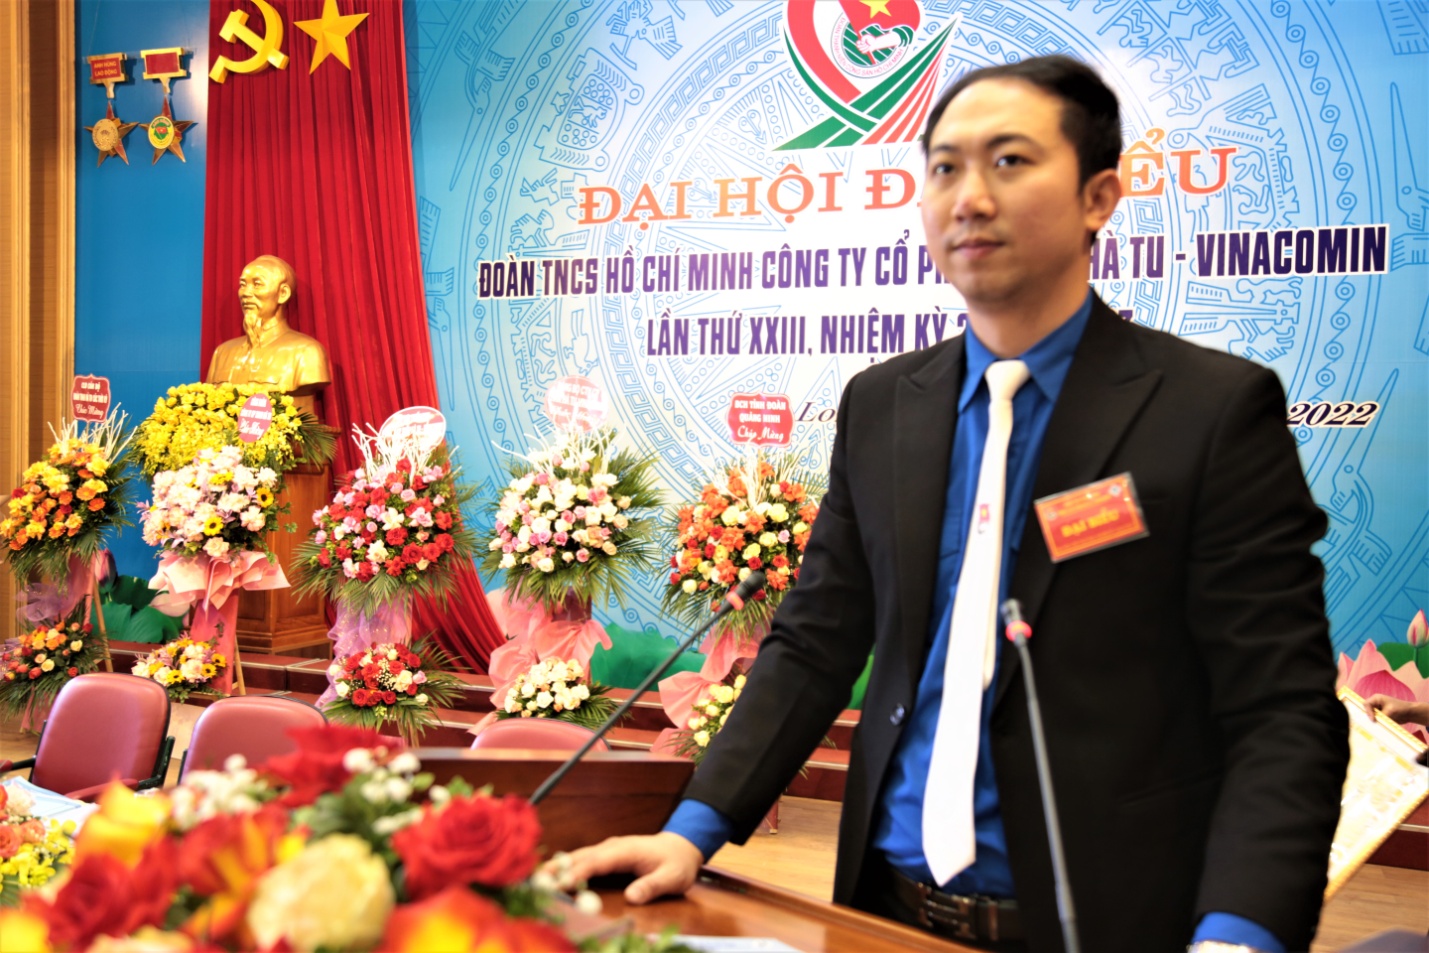 Đoàn thanh niên Than Hà Tu: Khẳng định vị trí, vai trò của tuổi trẻ trong phát triển Doanh nghiệp